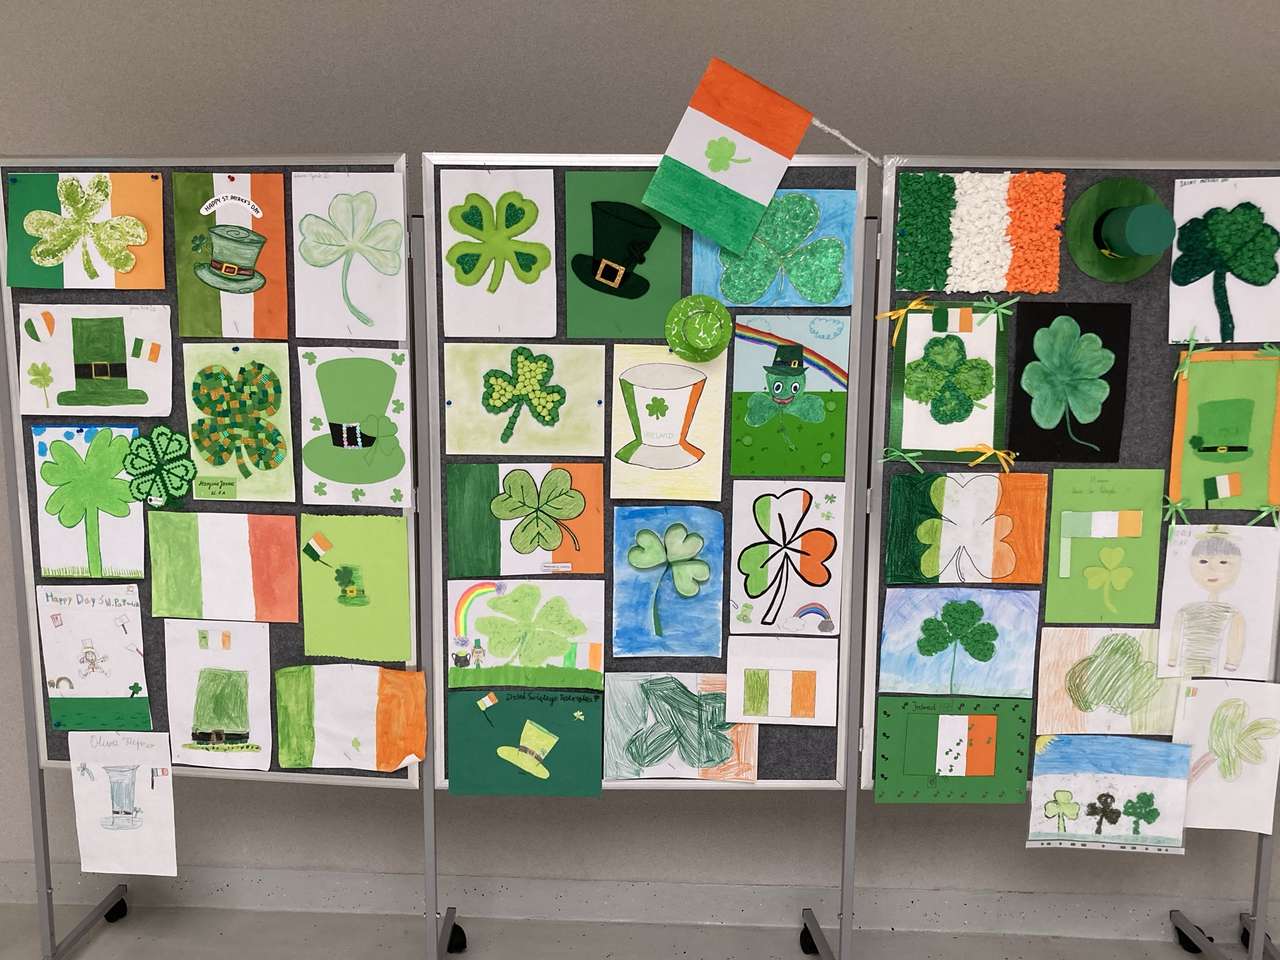 NS. Patrick's Day op onze school online puzzel